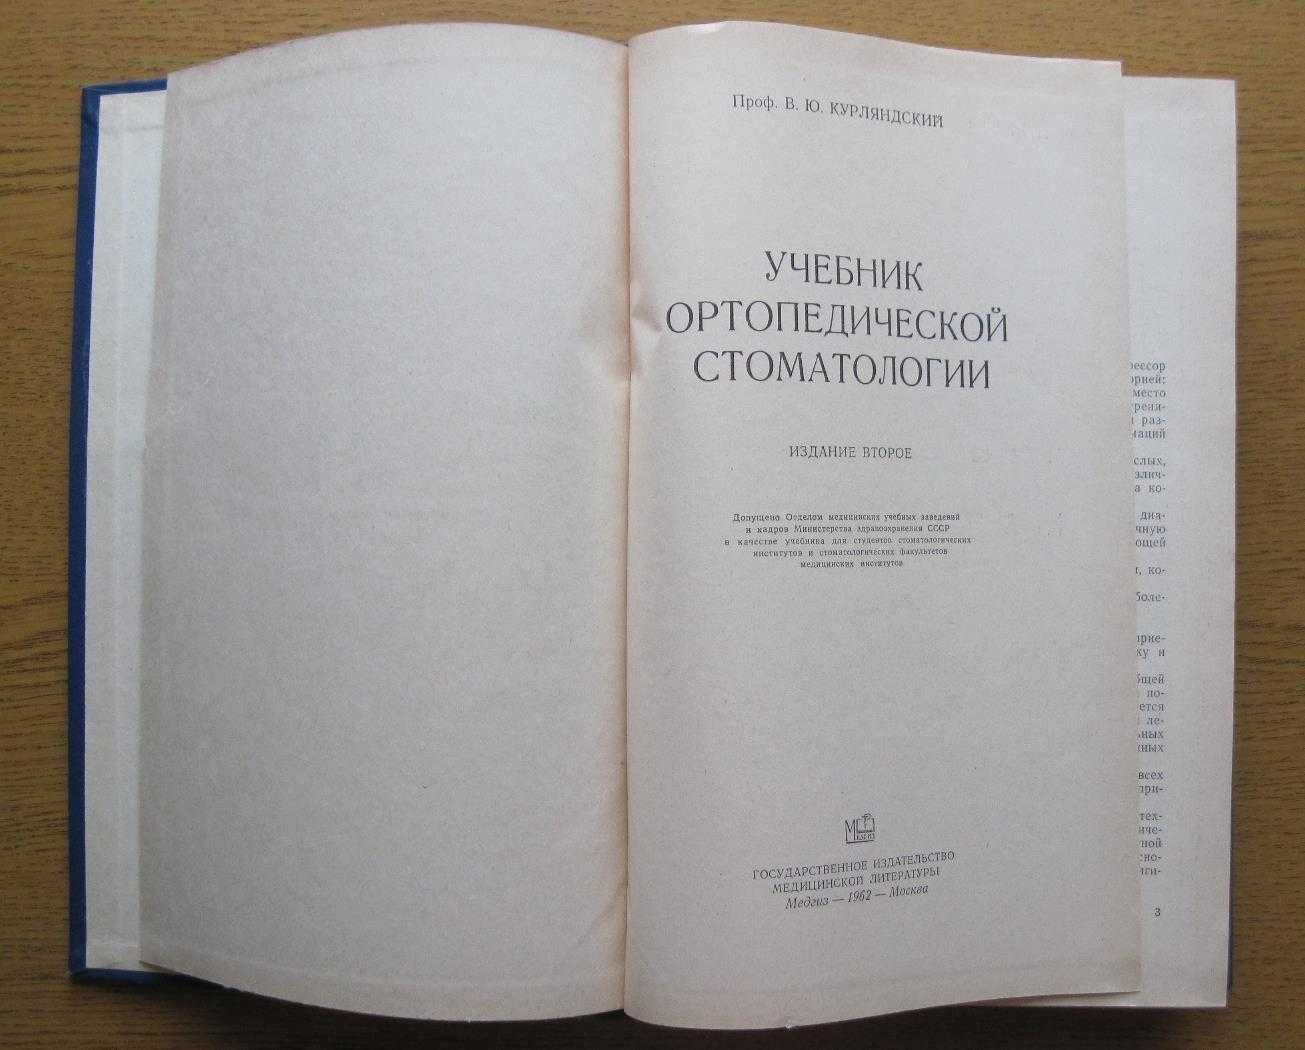 Учебник ортопедической стоматологии. В.Ю.Курляндский, 1962г.